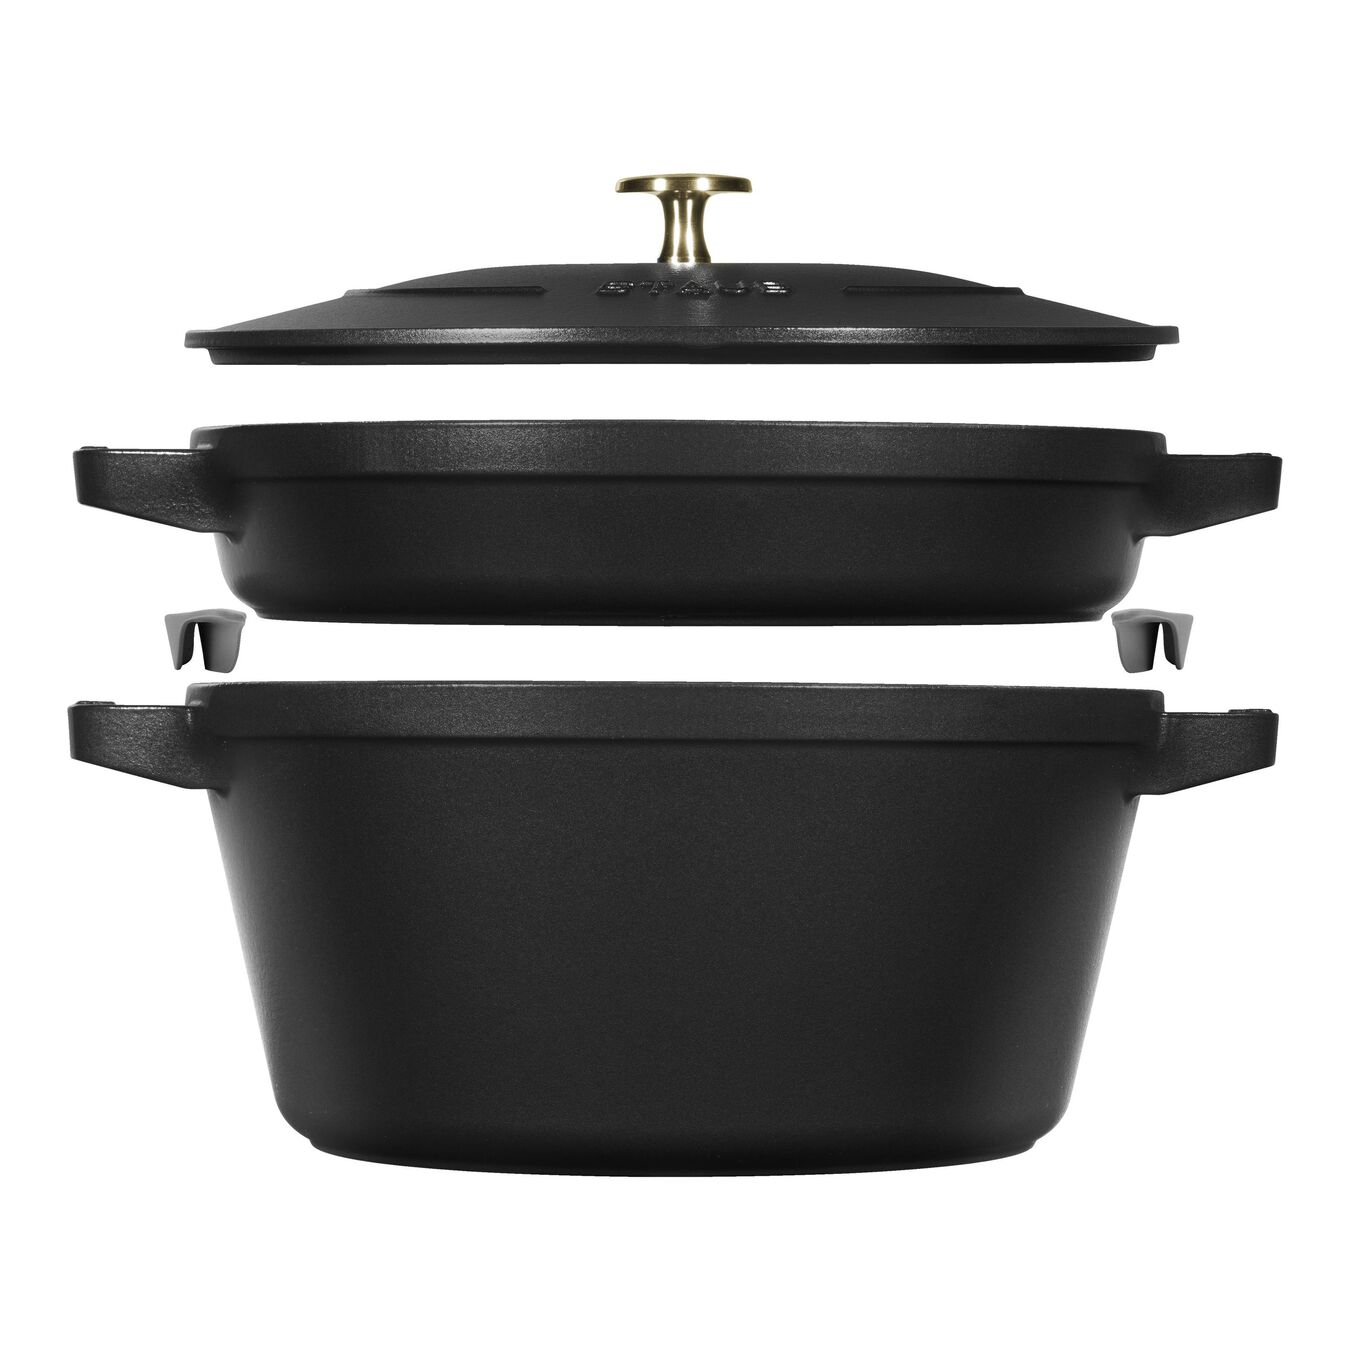 Set de casseroles Black Matt, 2-pces,,large 1